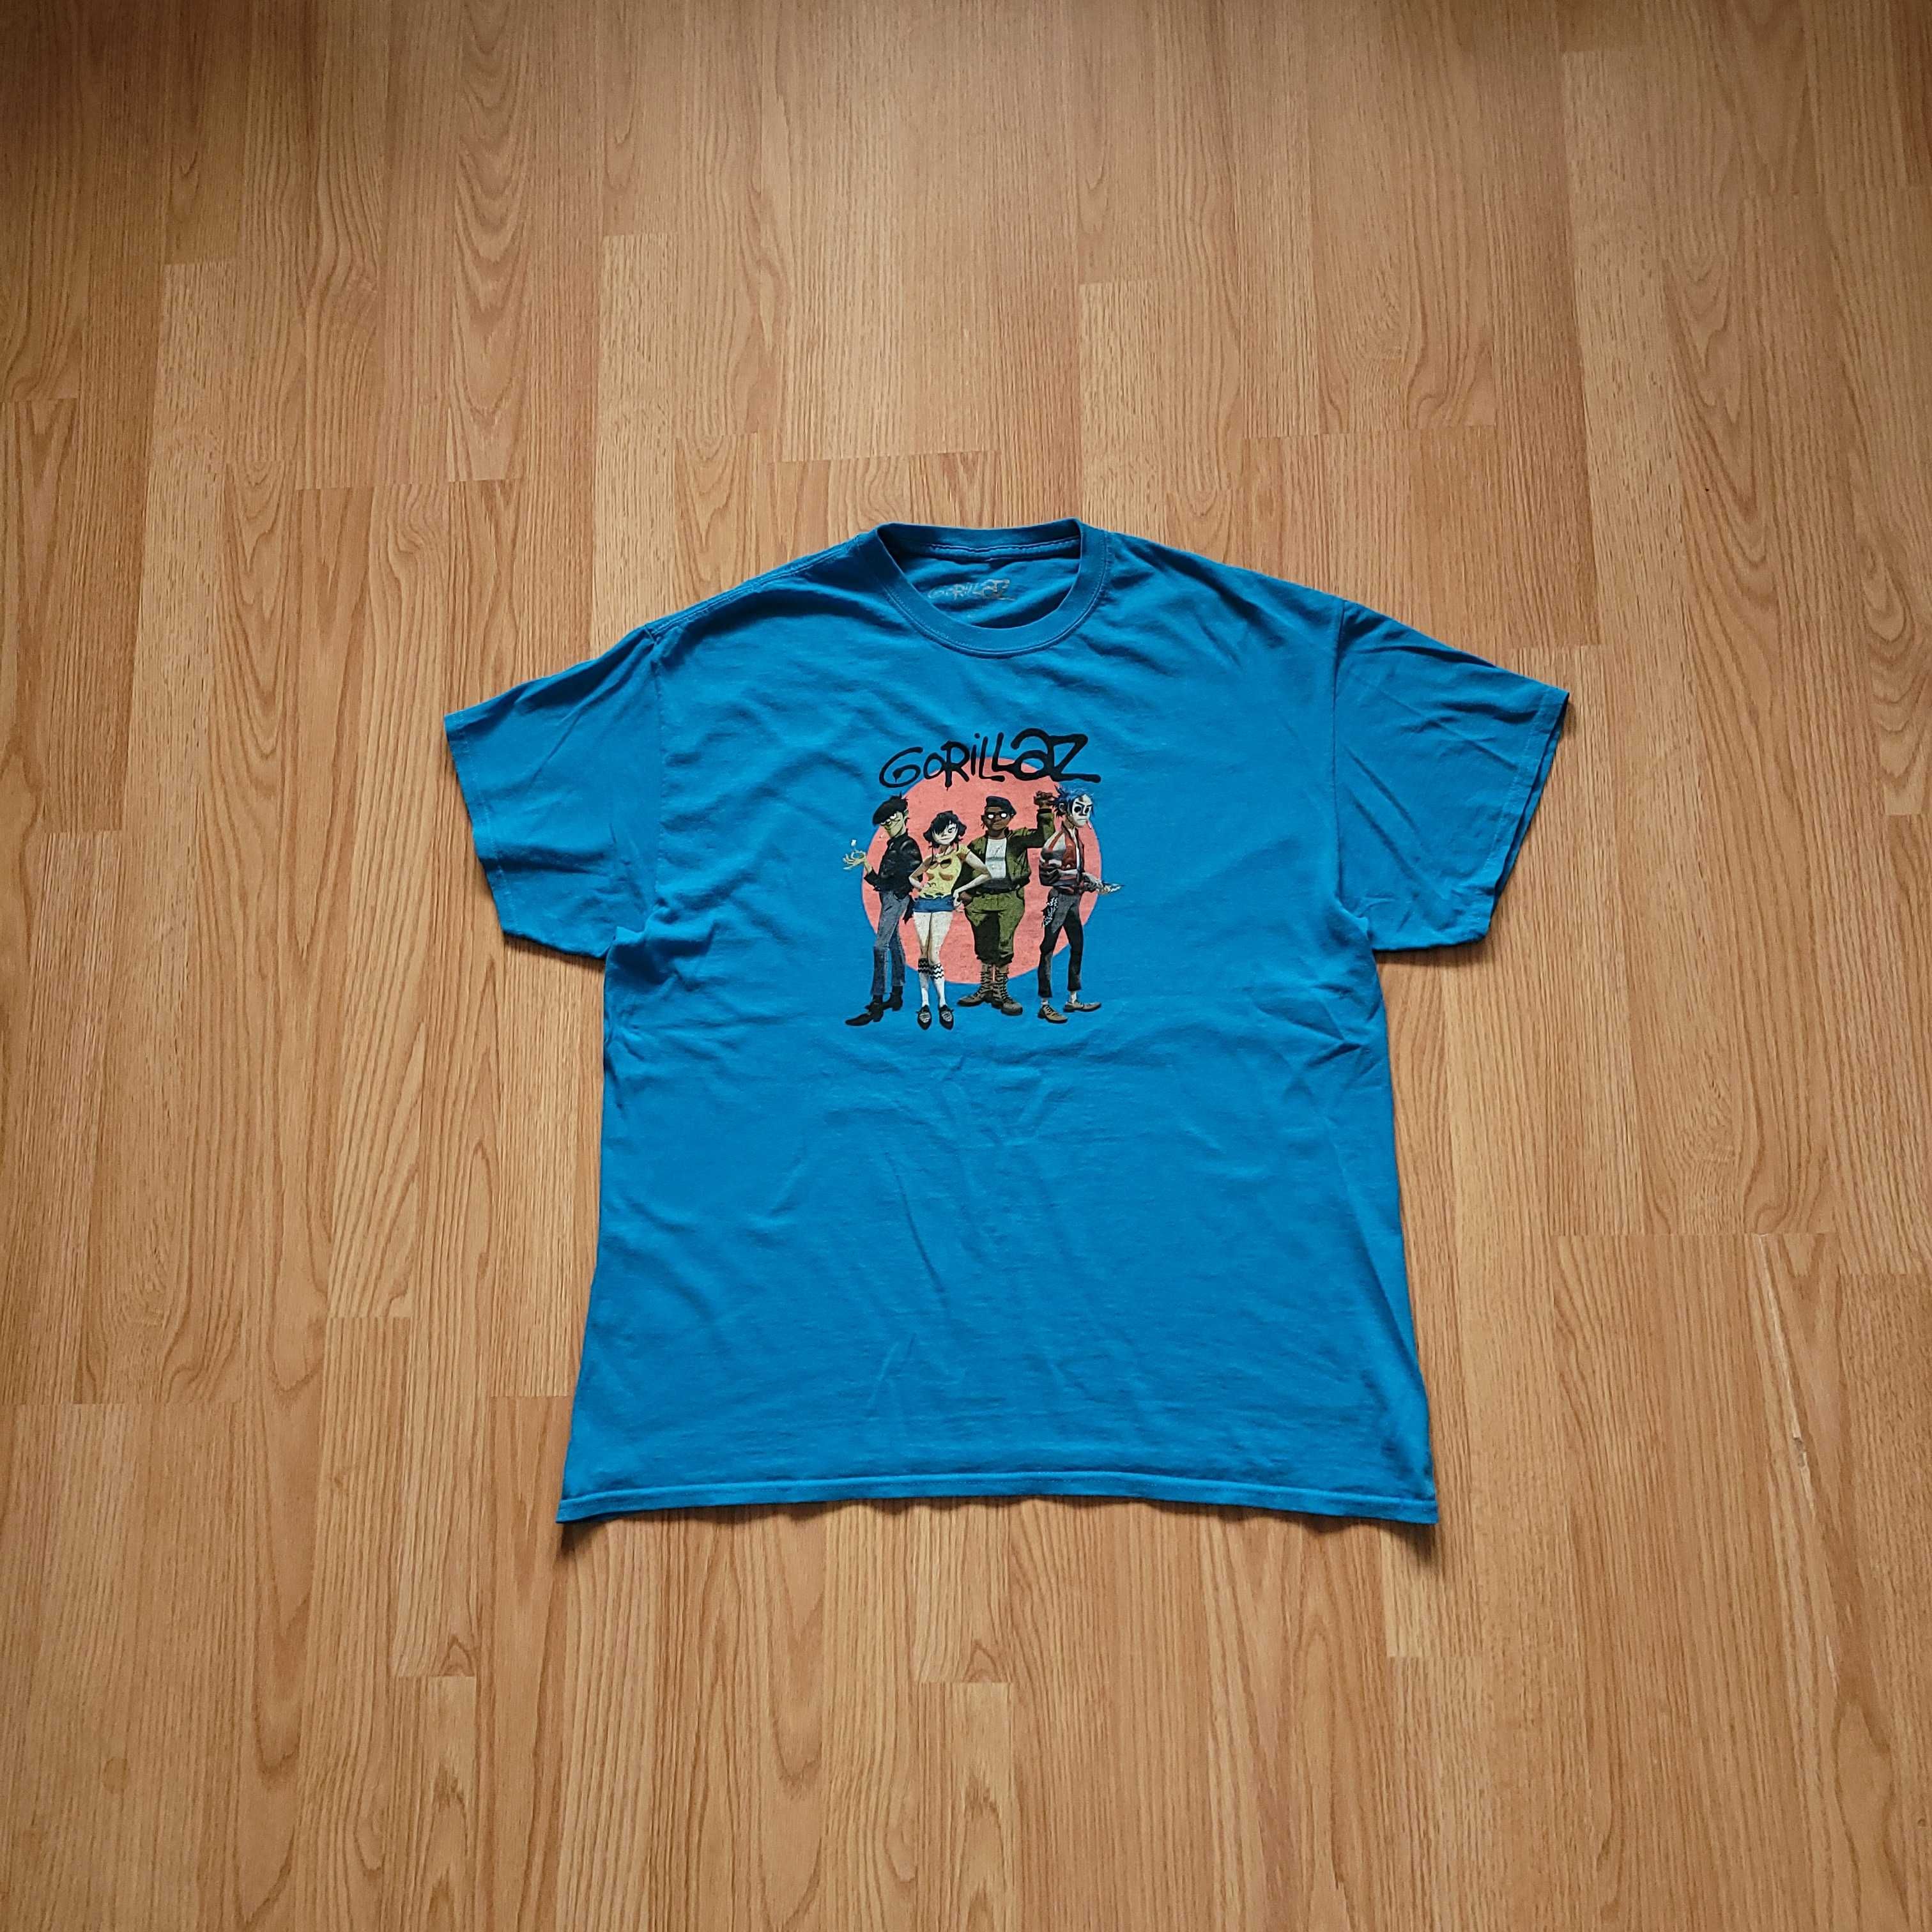 T-shirt Gorillaz XL oficjalny